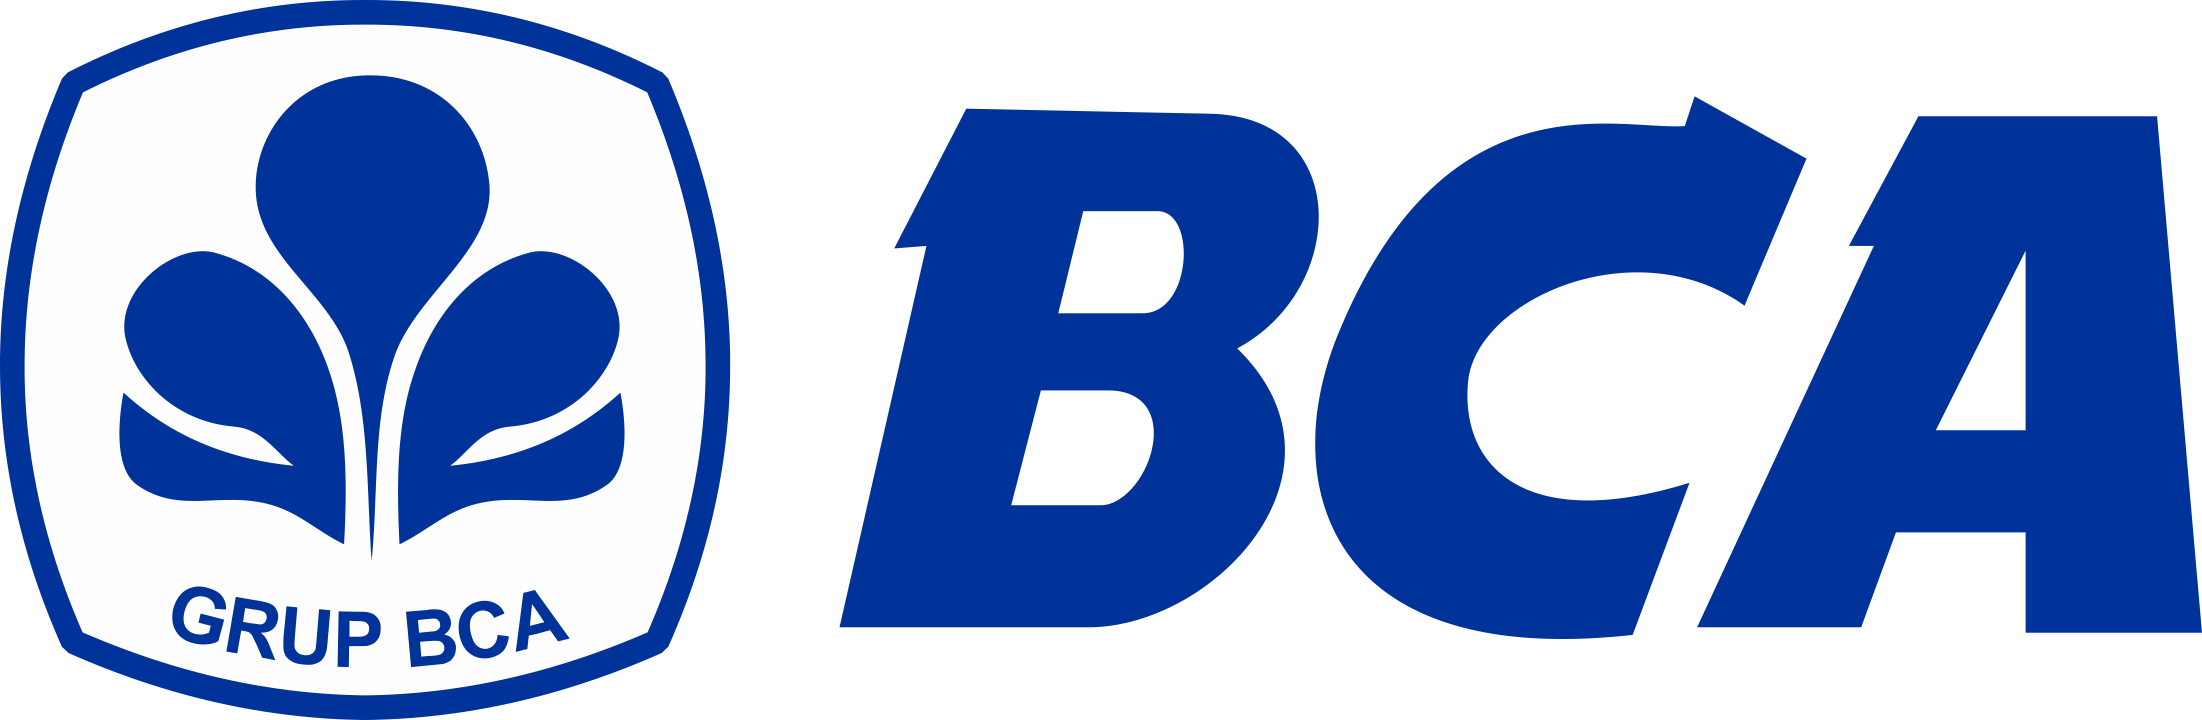 Bank-BCA-Logo-PNG-720p-FileVector69-1-1-1-1-2-1-1